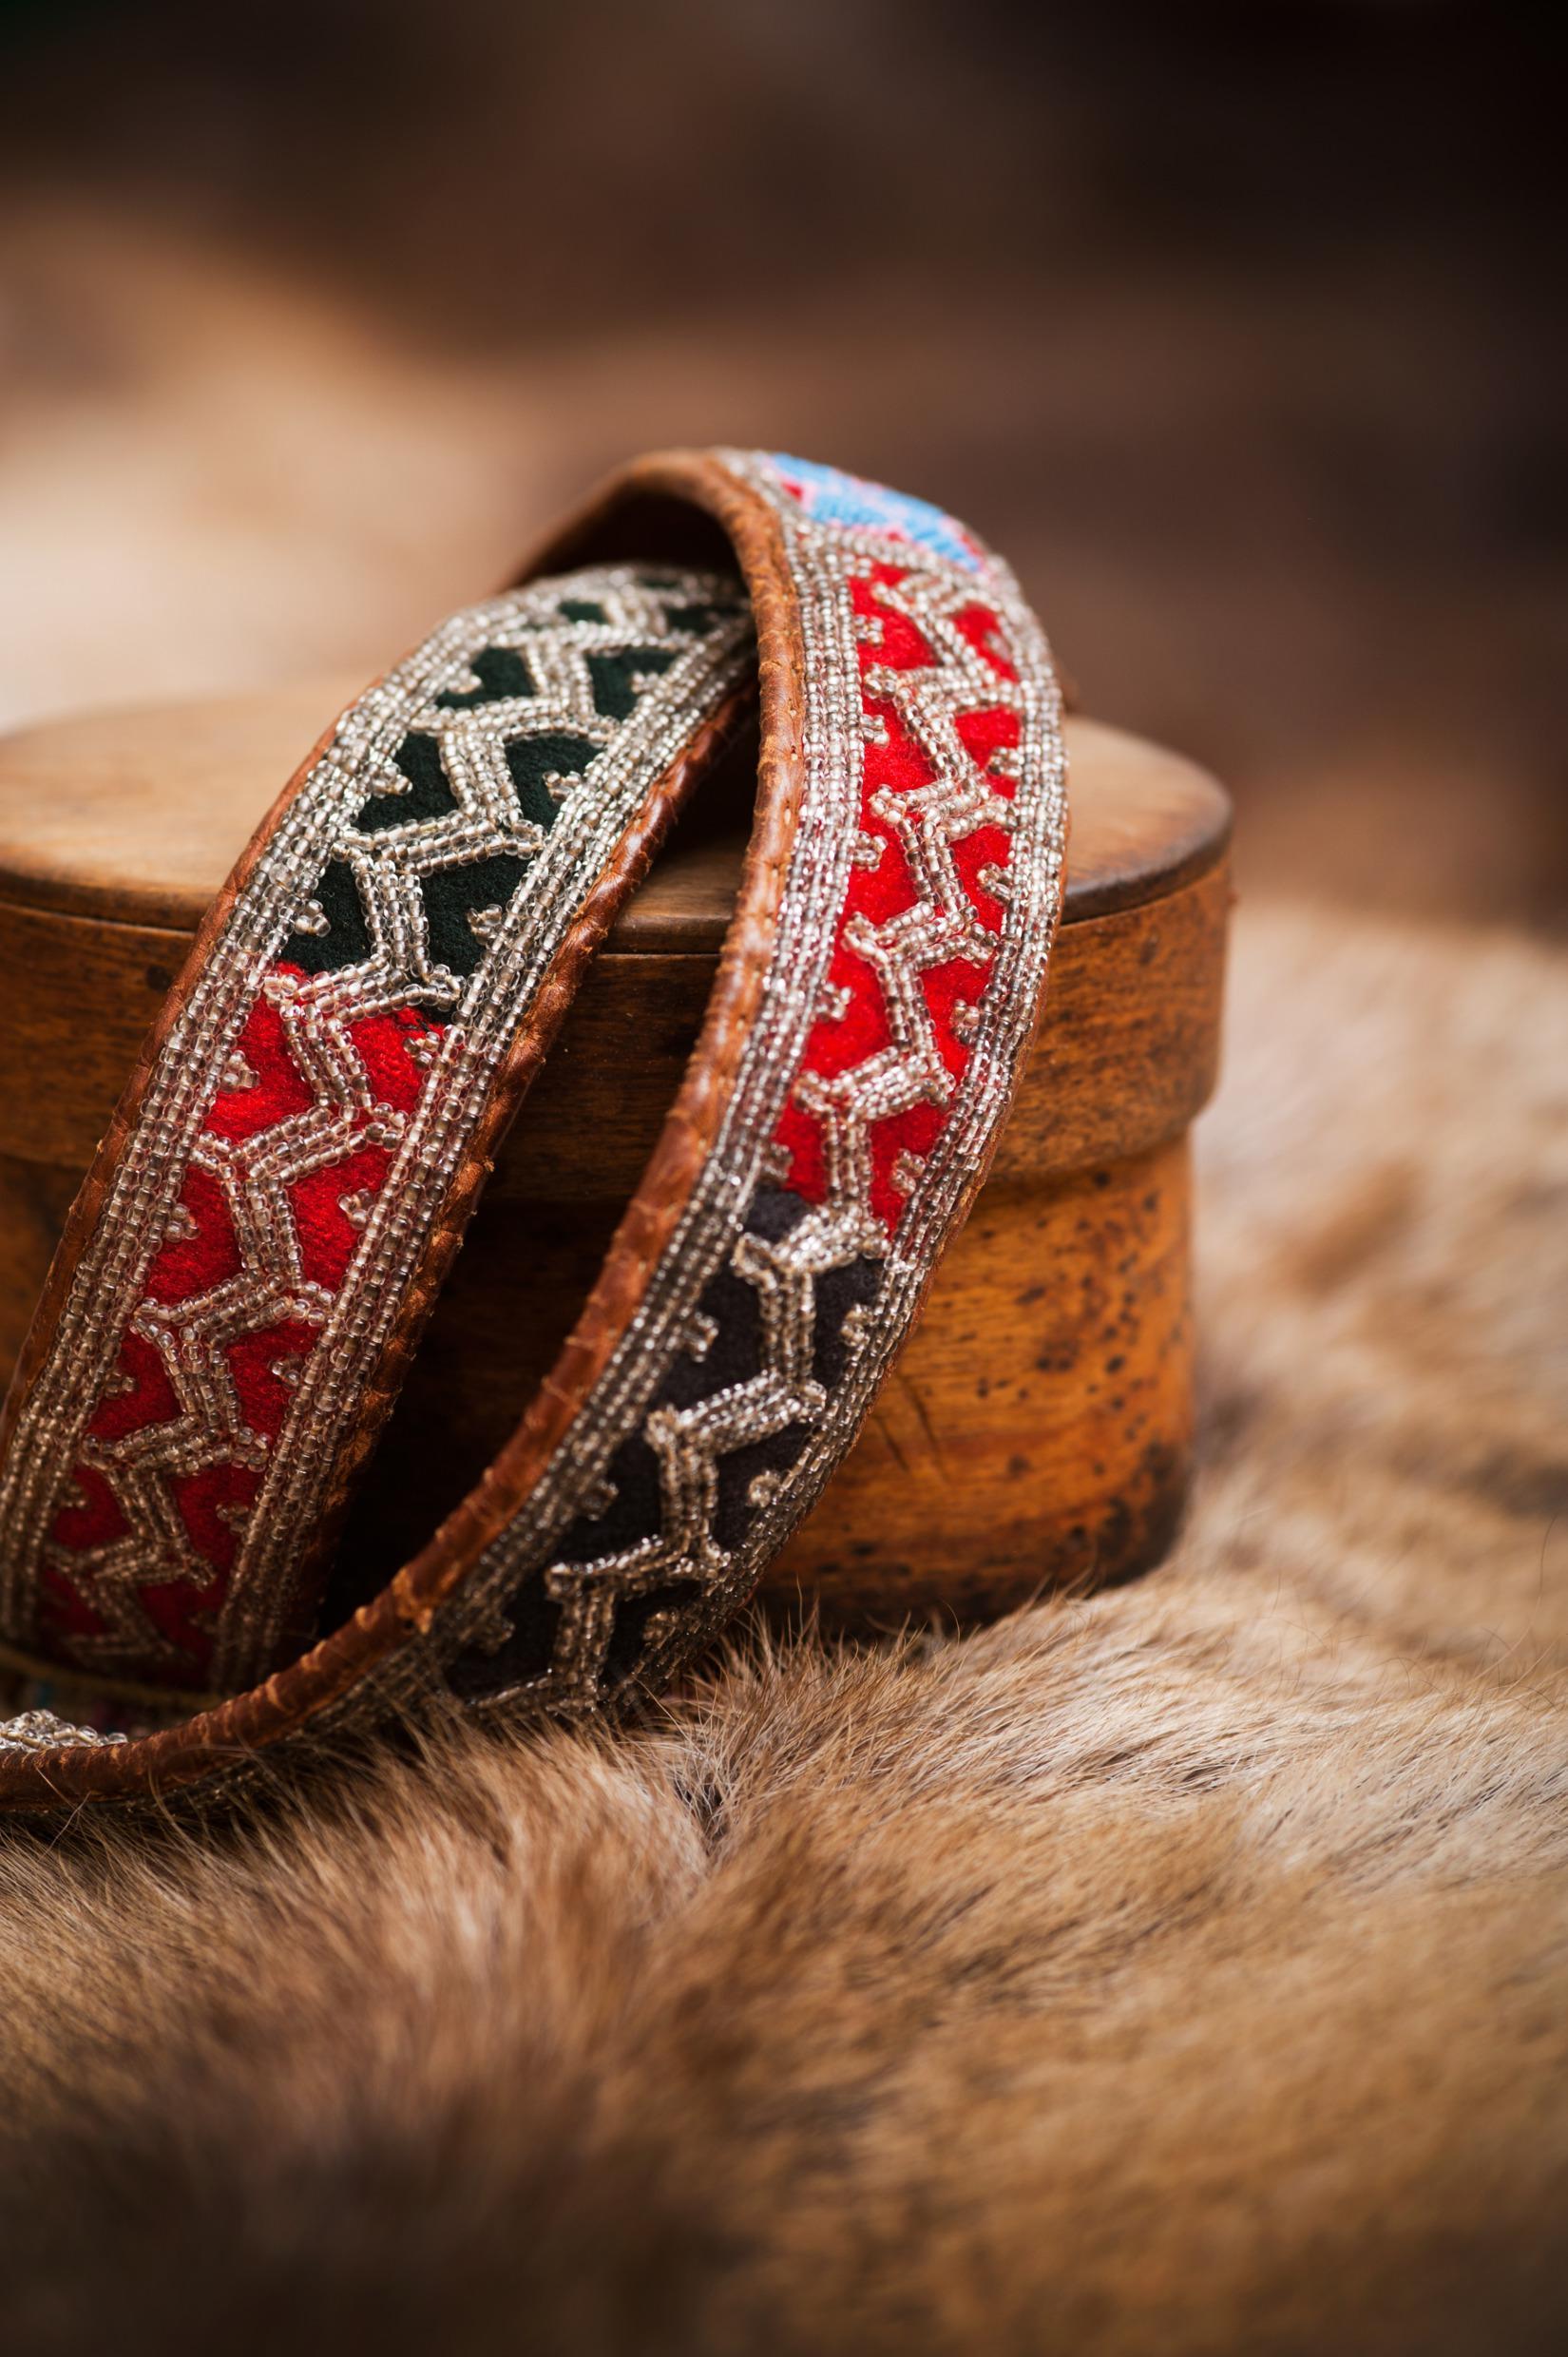 Sami handcraft leather and pewter bracelets on a reindeer pelt.